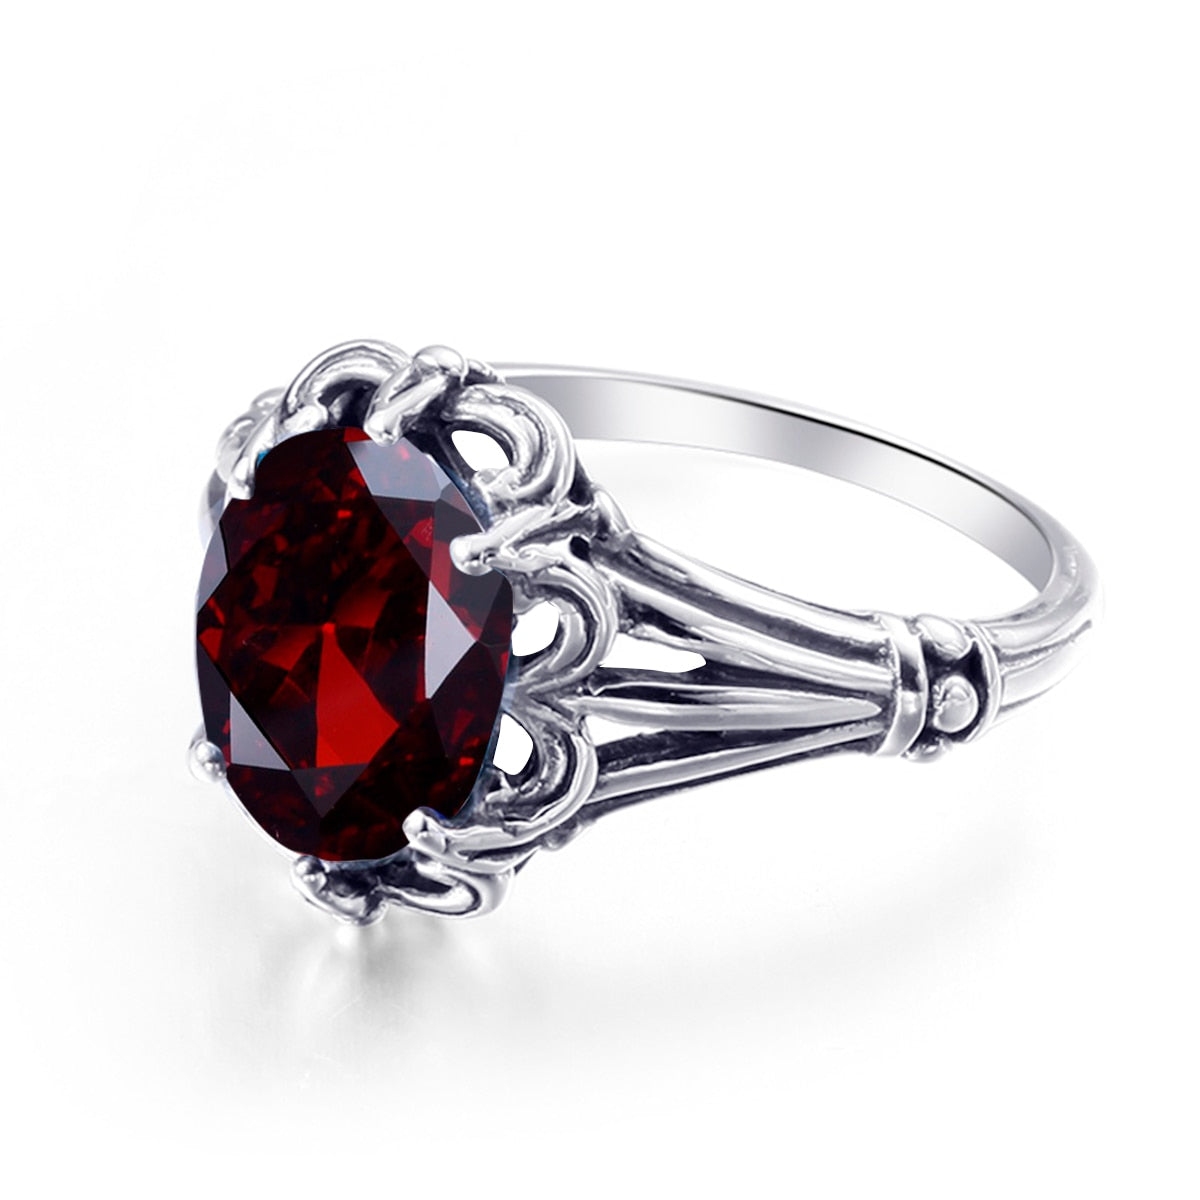 100% 925 Sterling Silver Rings Oval Design Garnet Bohemian Handmade Victoria Wieck Rings For Women Fine Jewelry